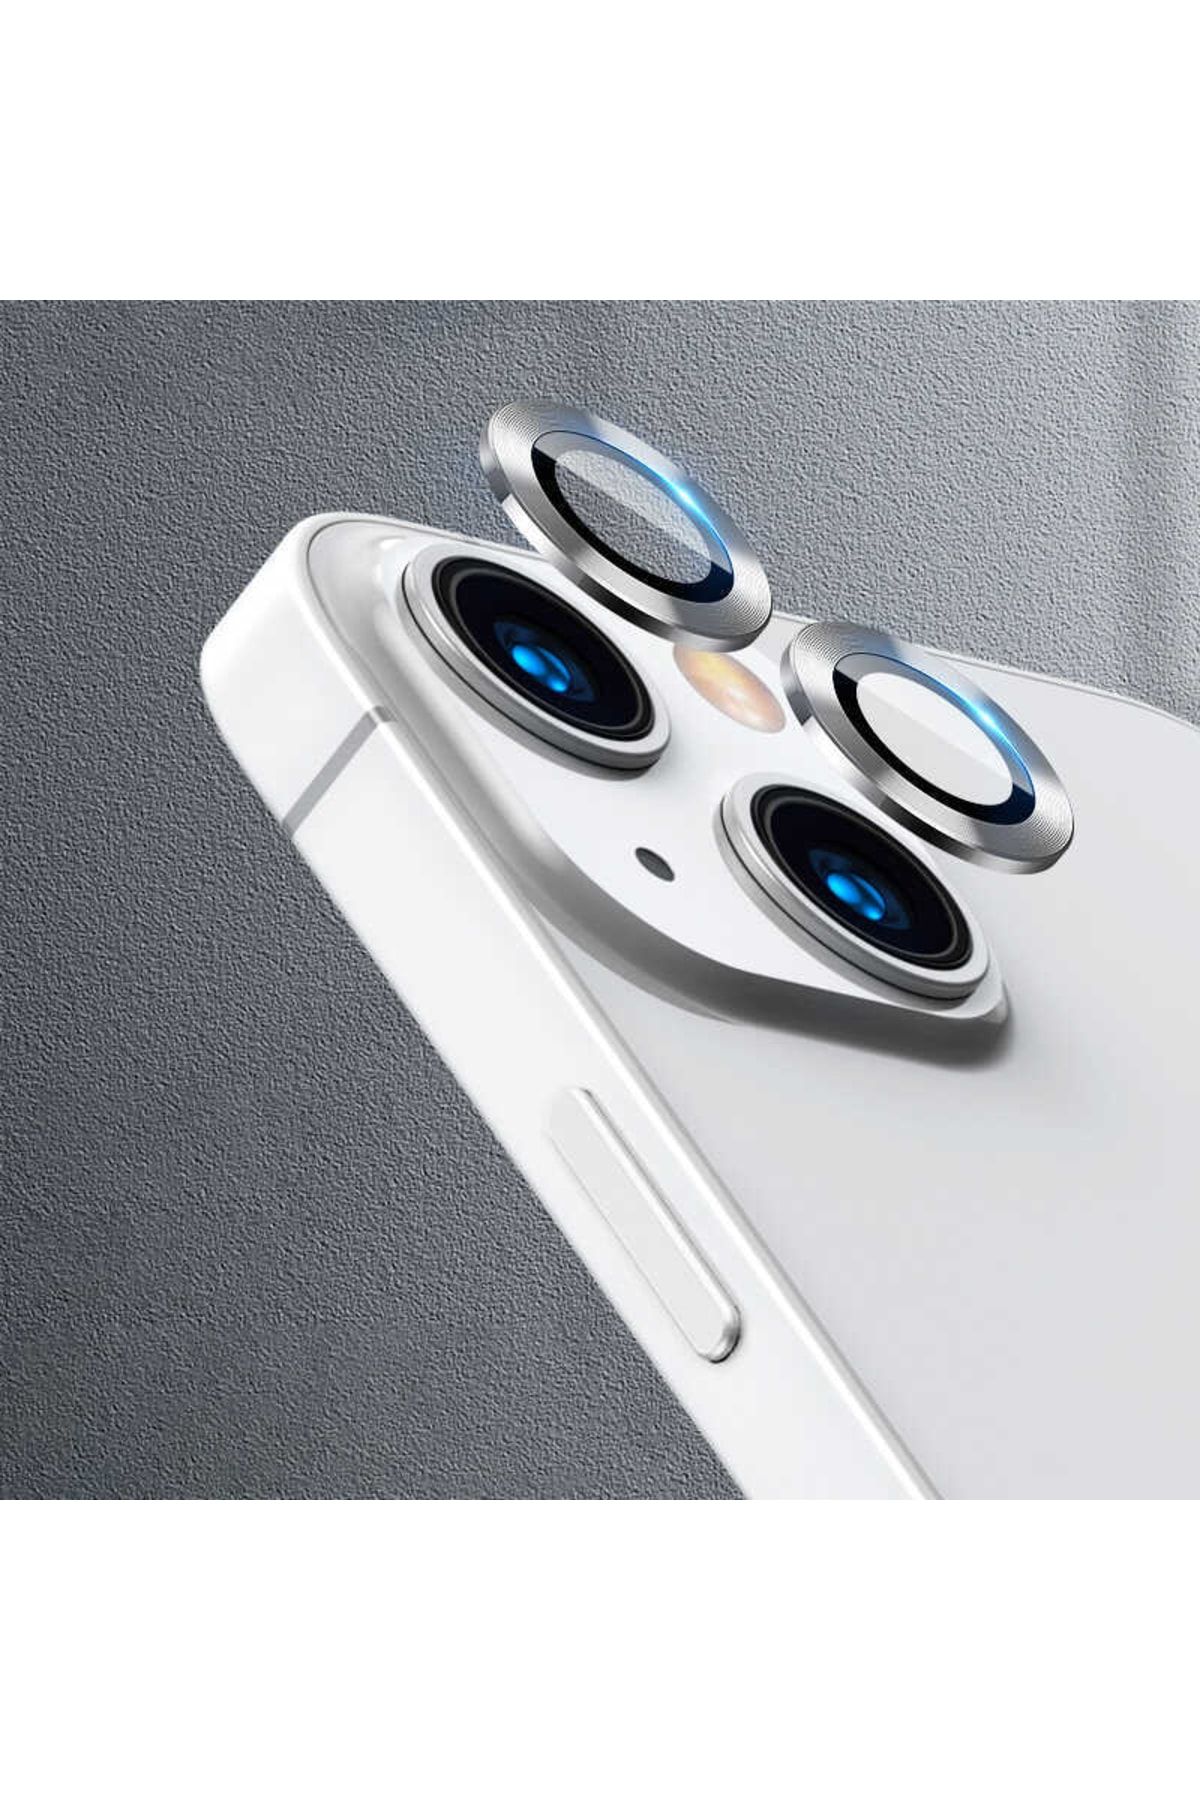 UnDePlus Iphone 13 Mini Uyumlu Kamera Lens Koruyucu Çerçeveli Koruyucu Cl-07